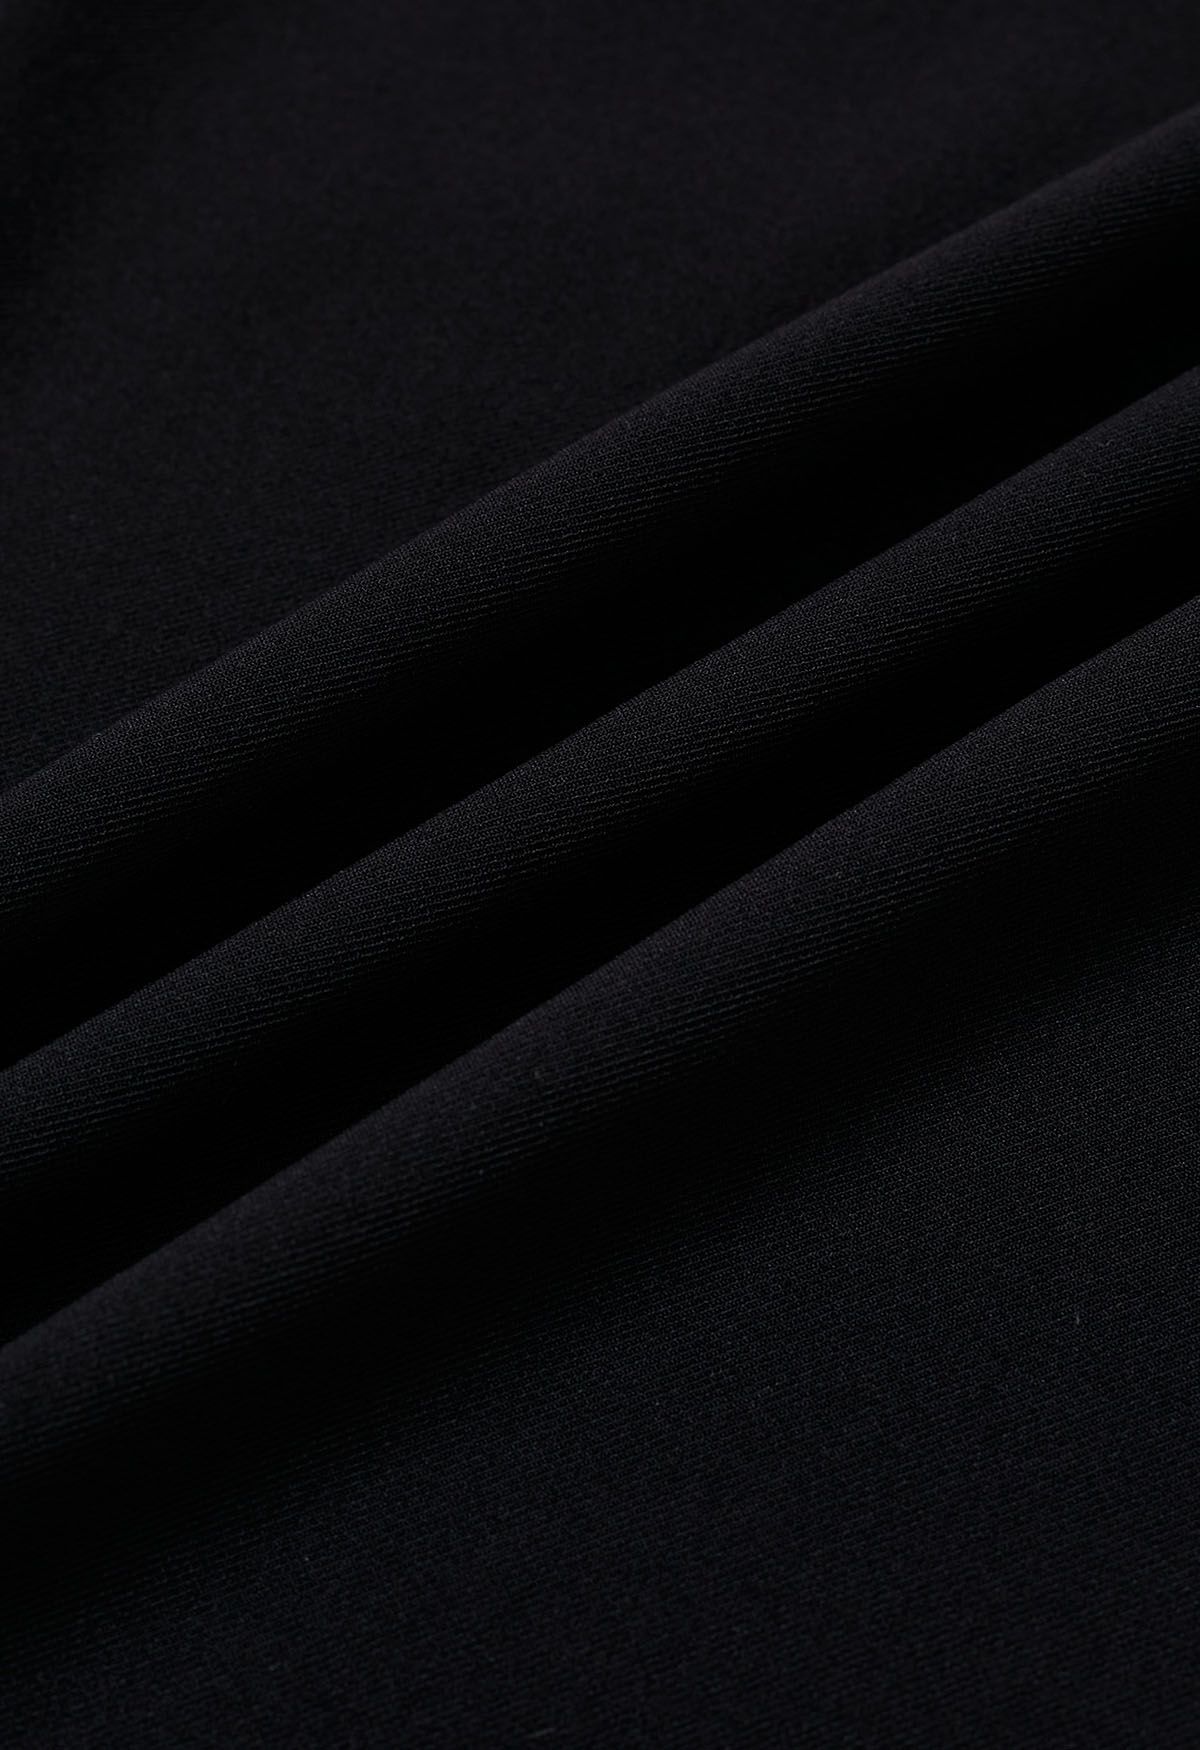 بنطال ذو طيات متقاطعة الخصر وساق مستقيمة باللون الأسود